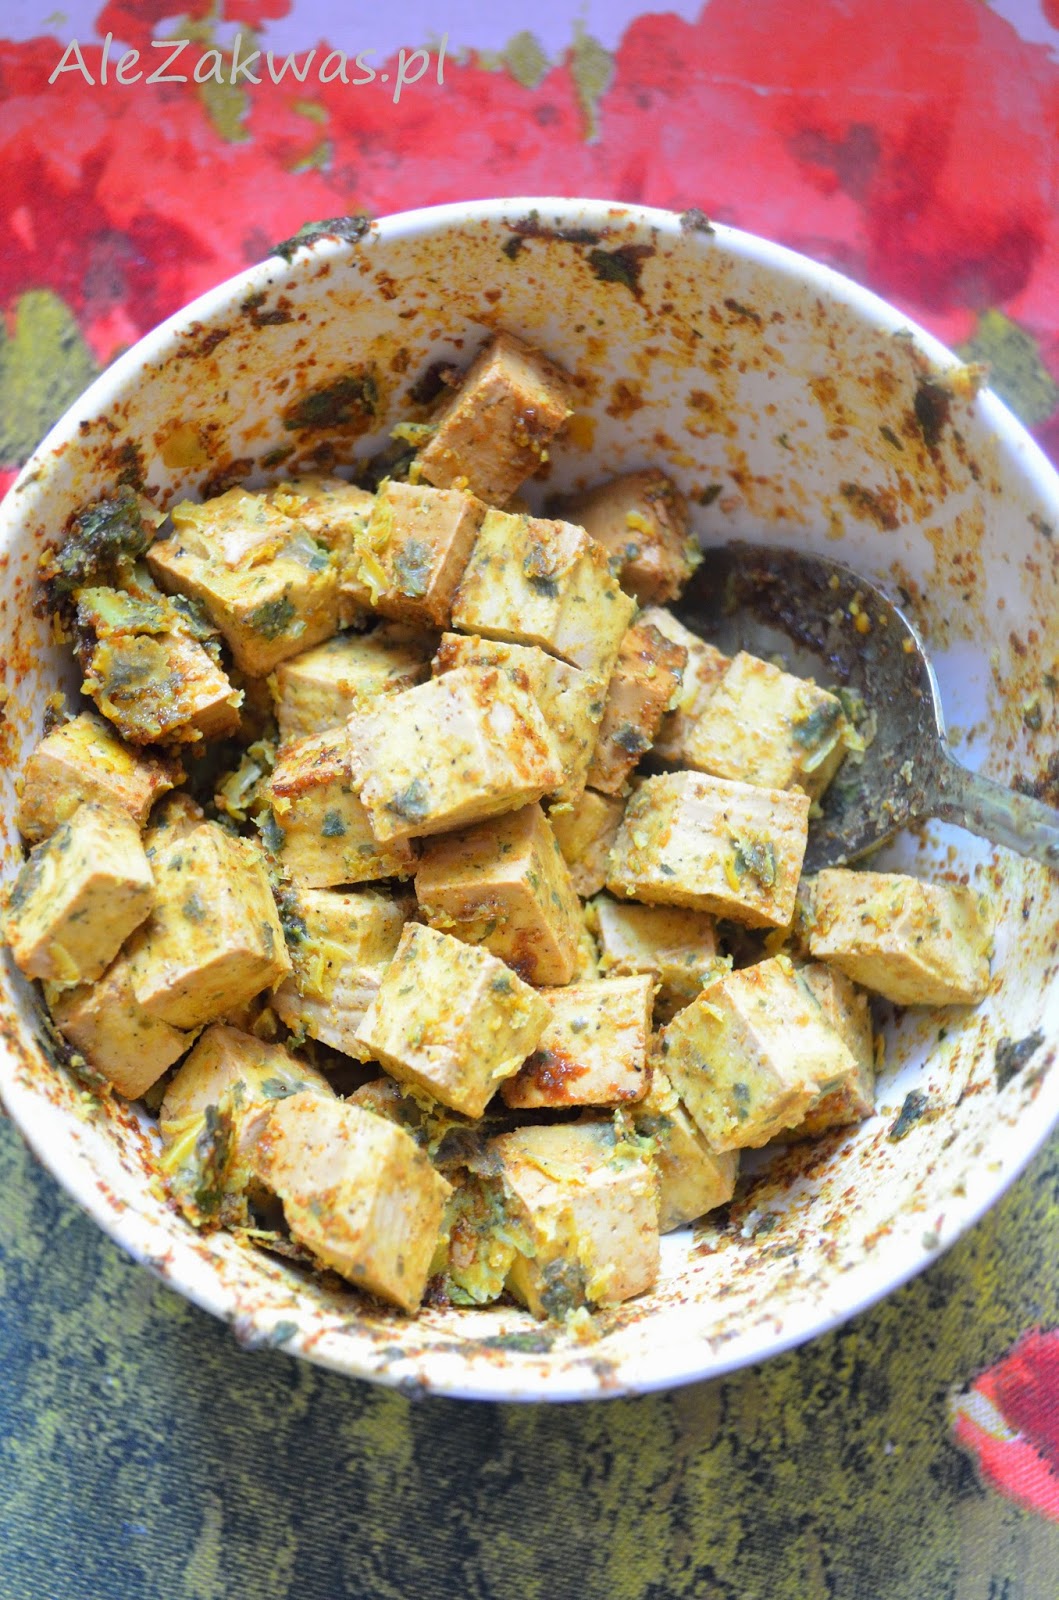 Ale zakwas!: Tofu marynowane i smażone